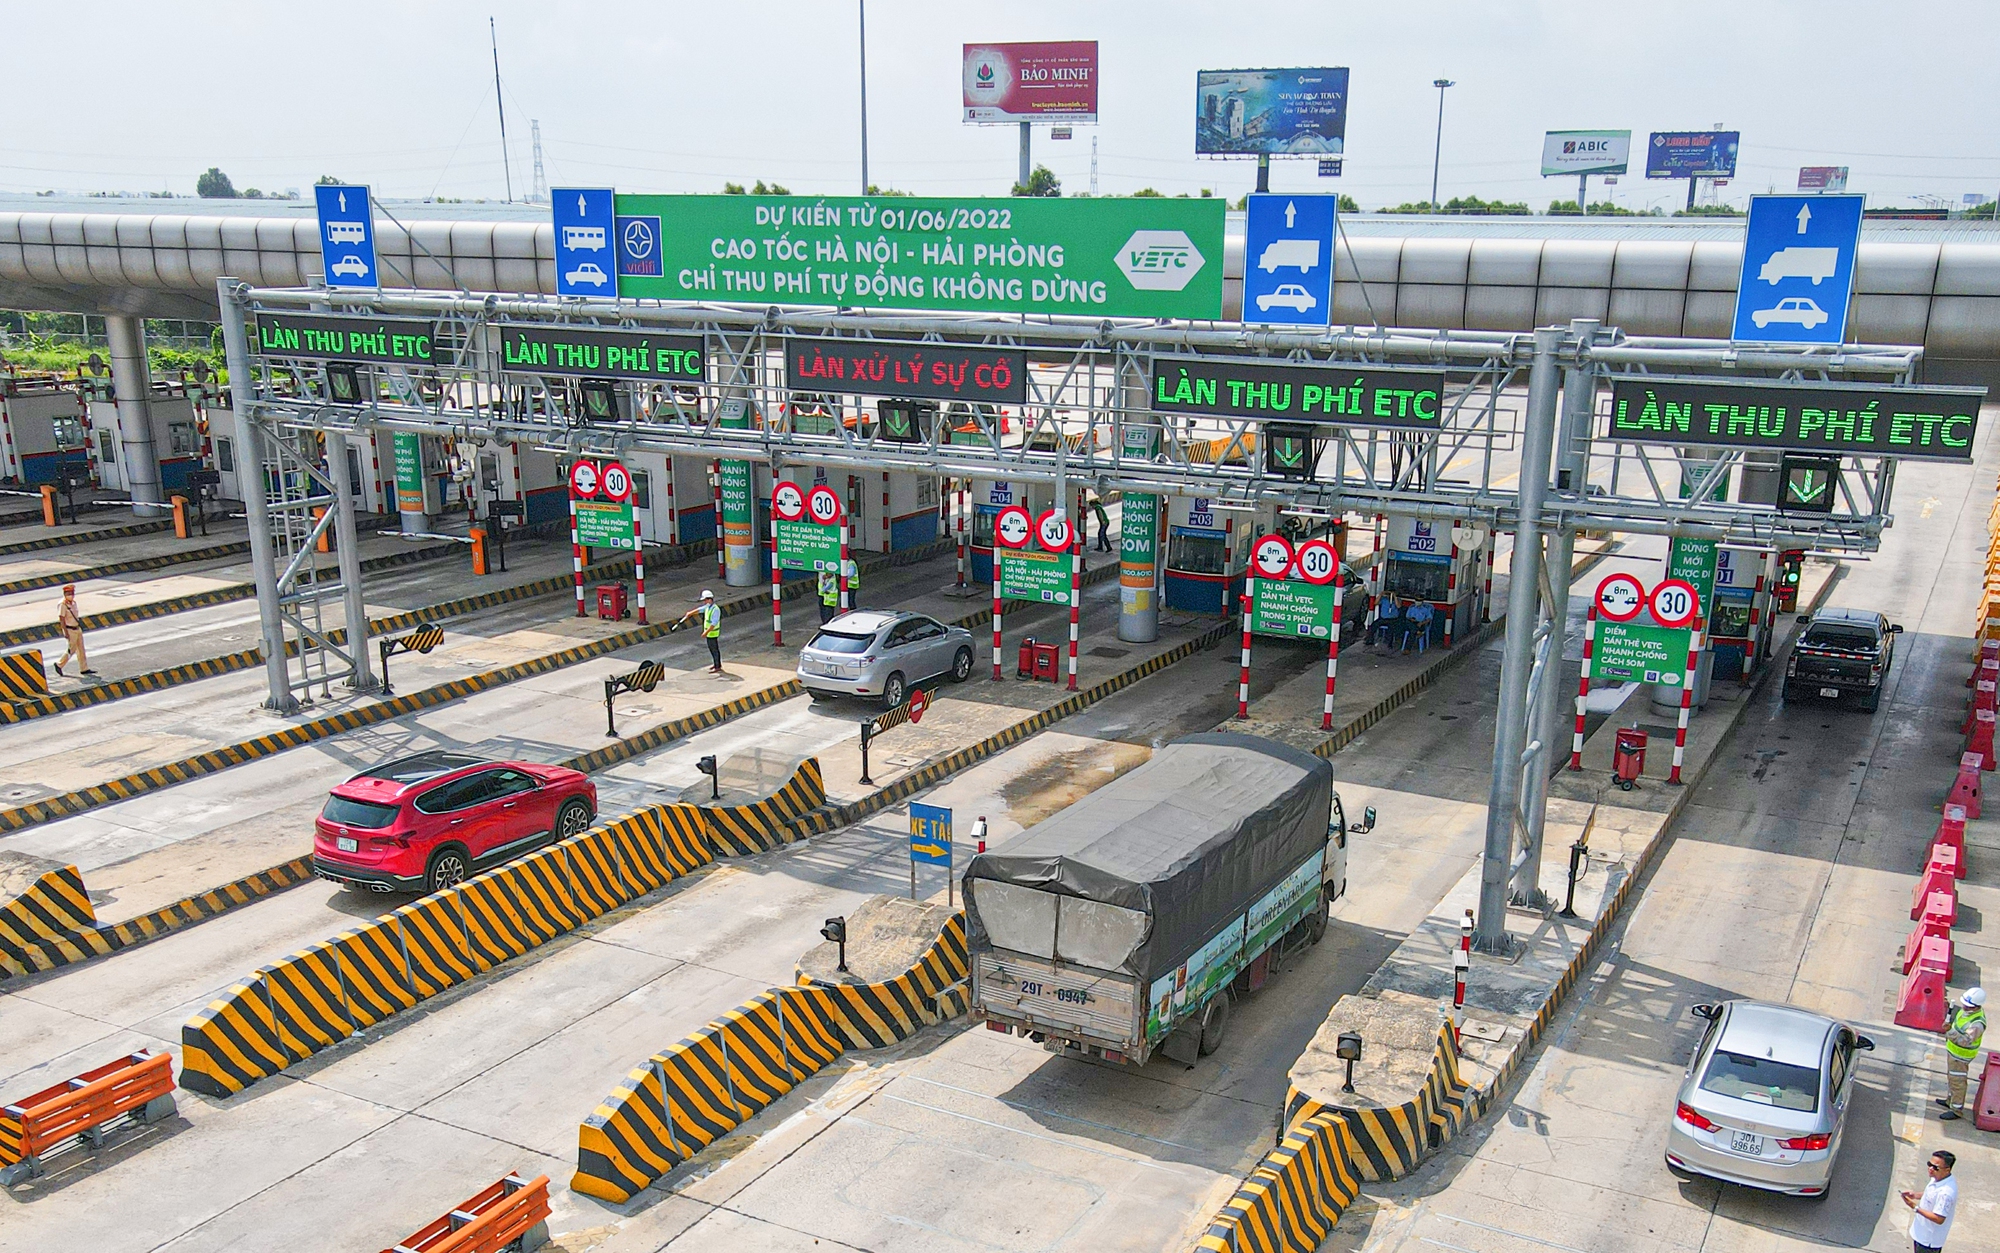 Lợi gì khi sử dụng hệ thống giao thông thông minh trên cao tốc Hà Nội - Hải Phòng? - Ảnh 1.